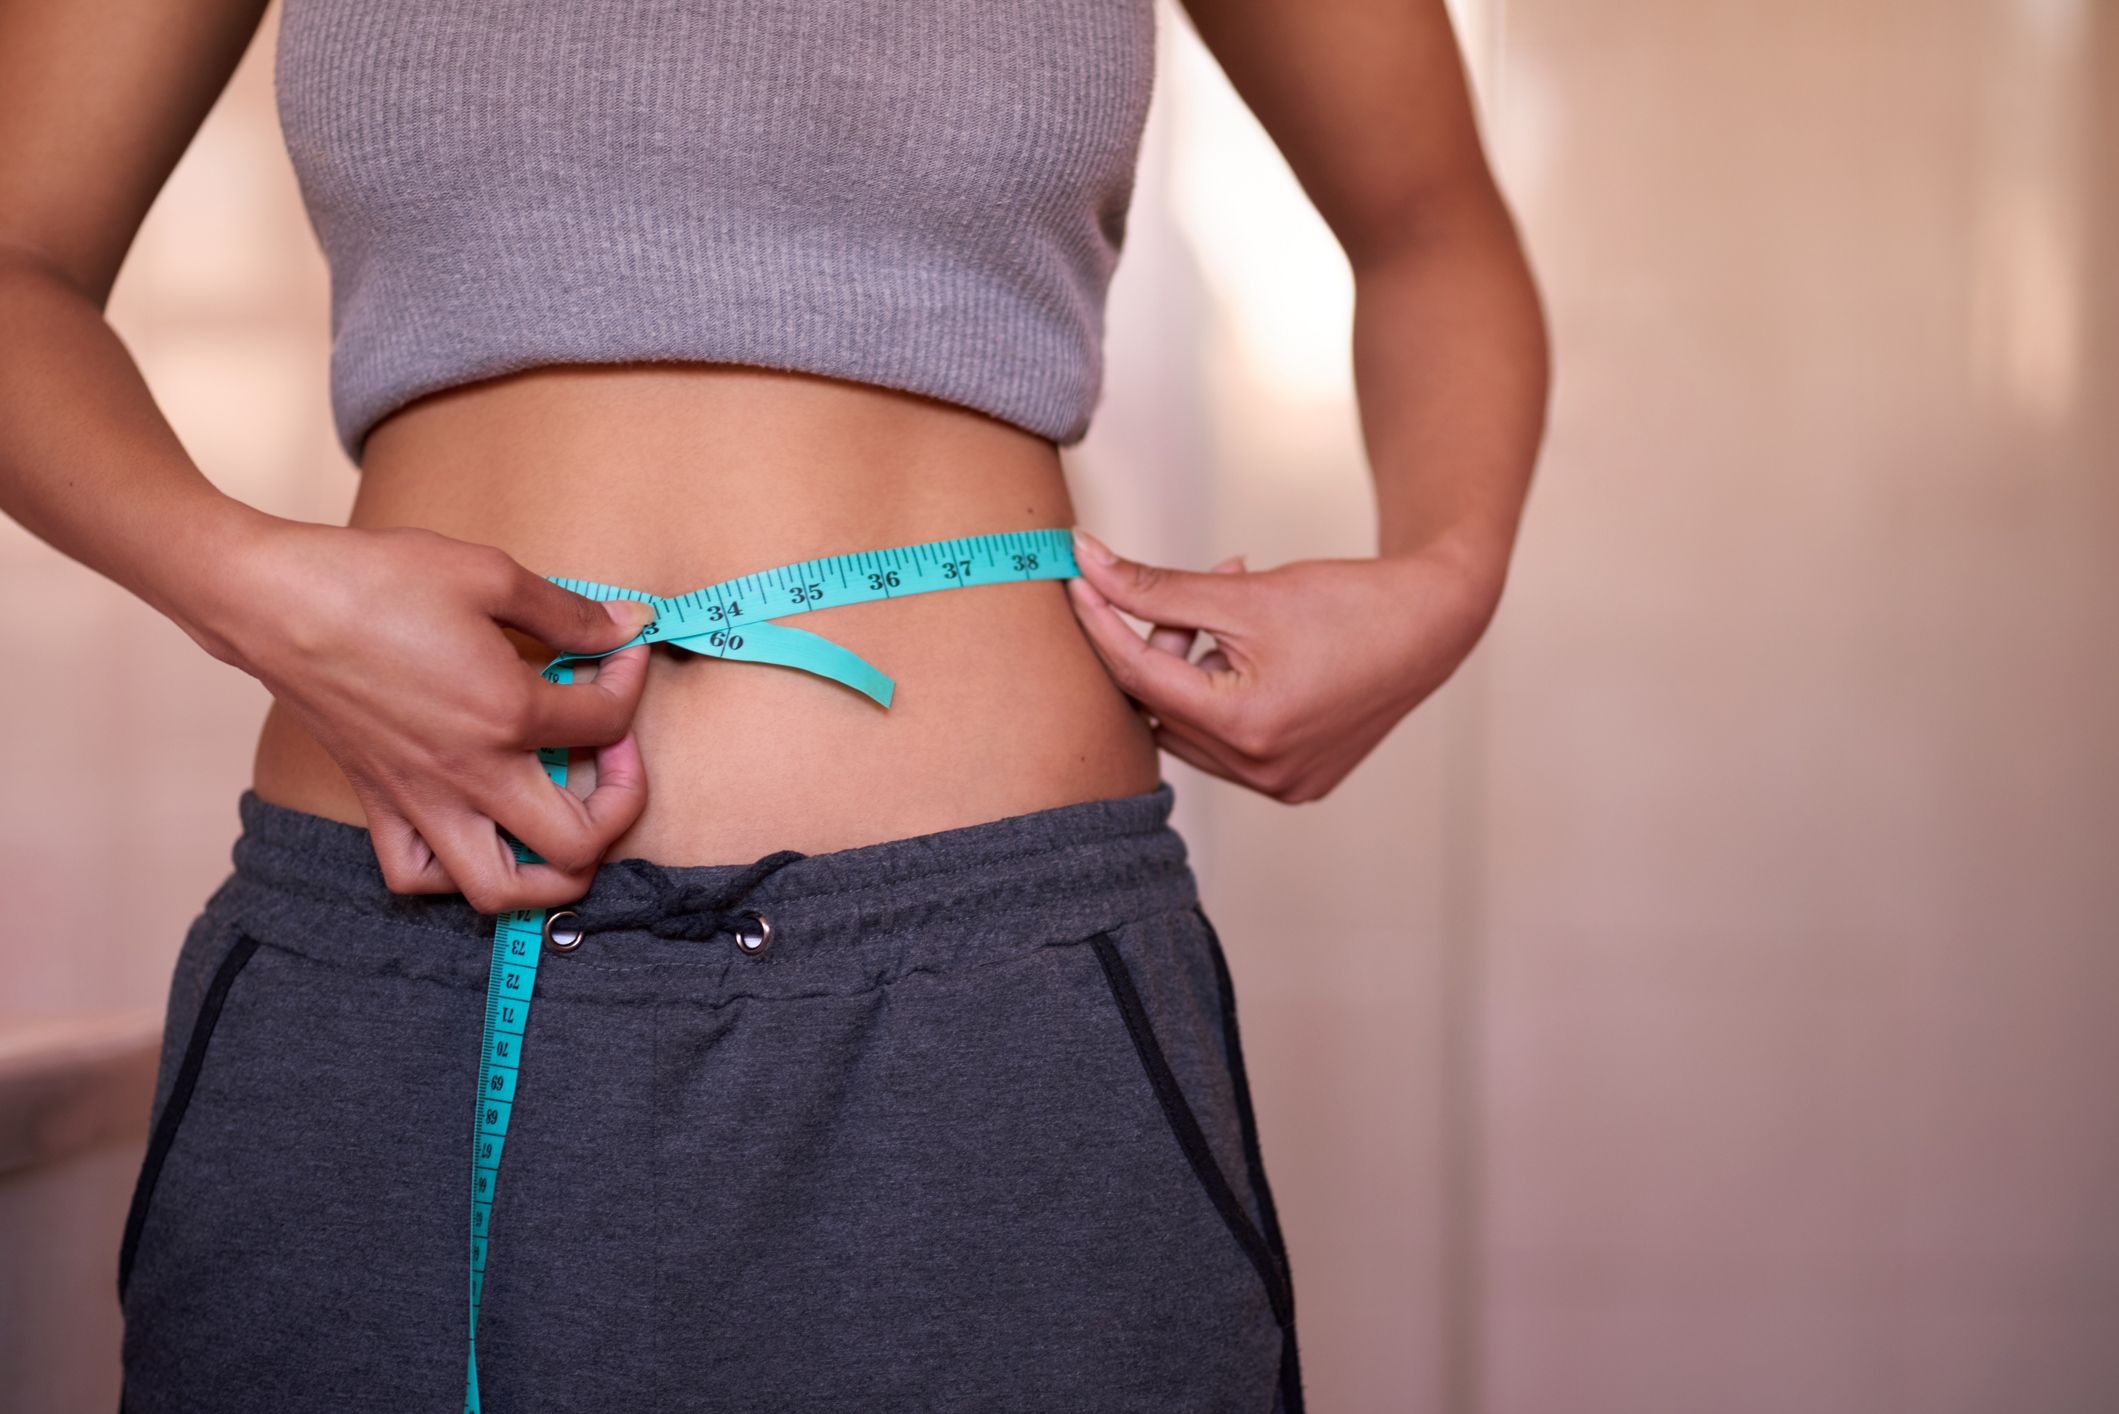 Tabla de ejercicios para reducir abdomen y cintura según expertas